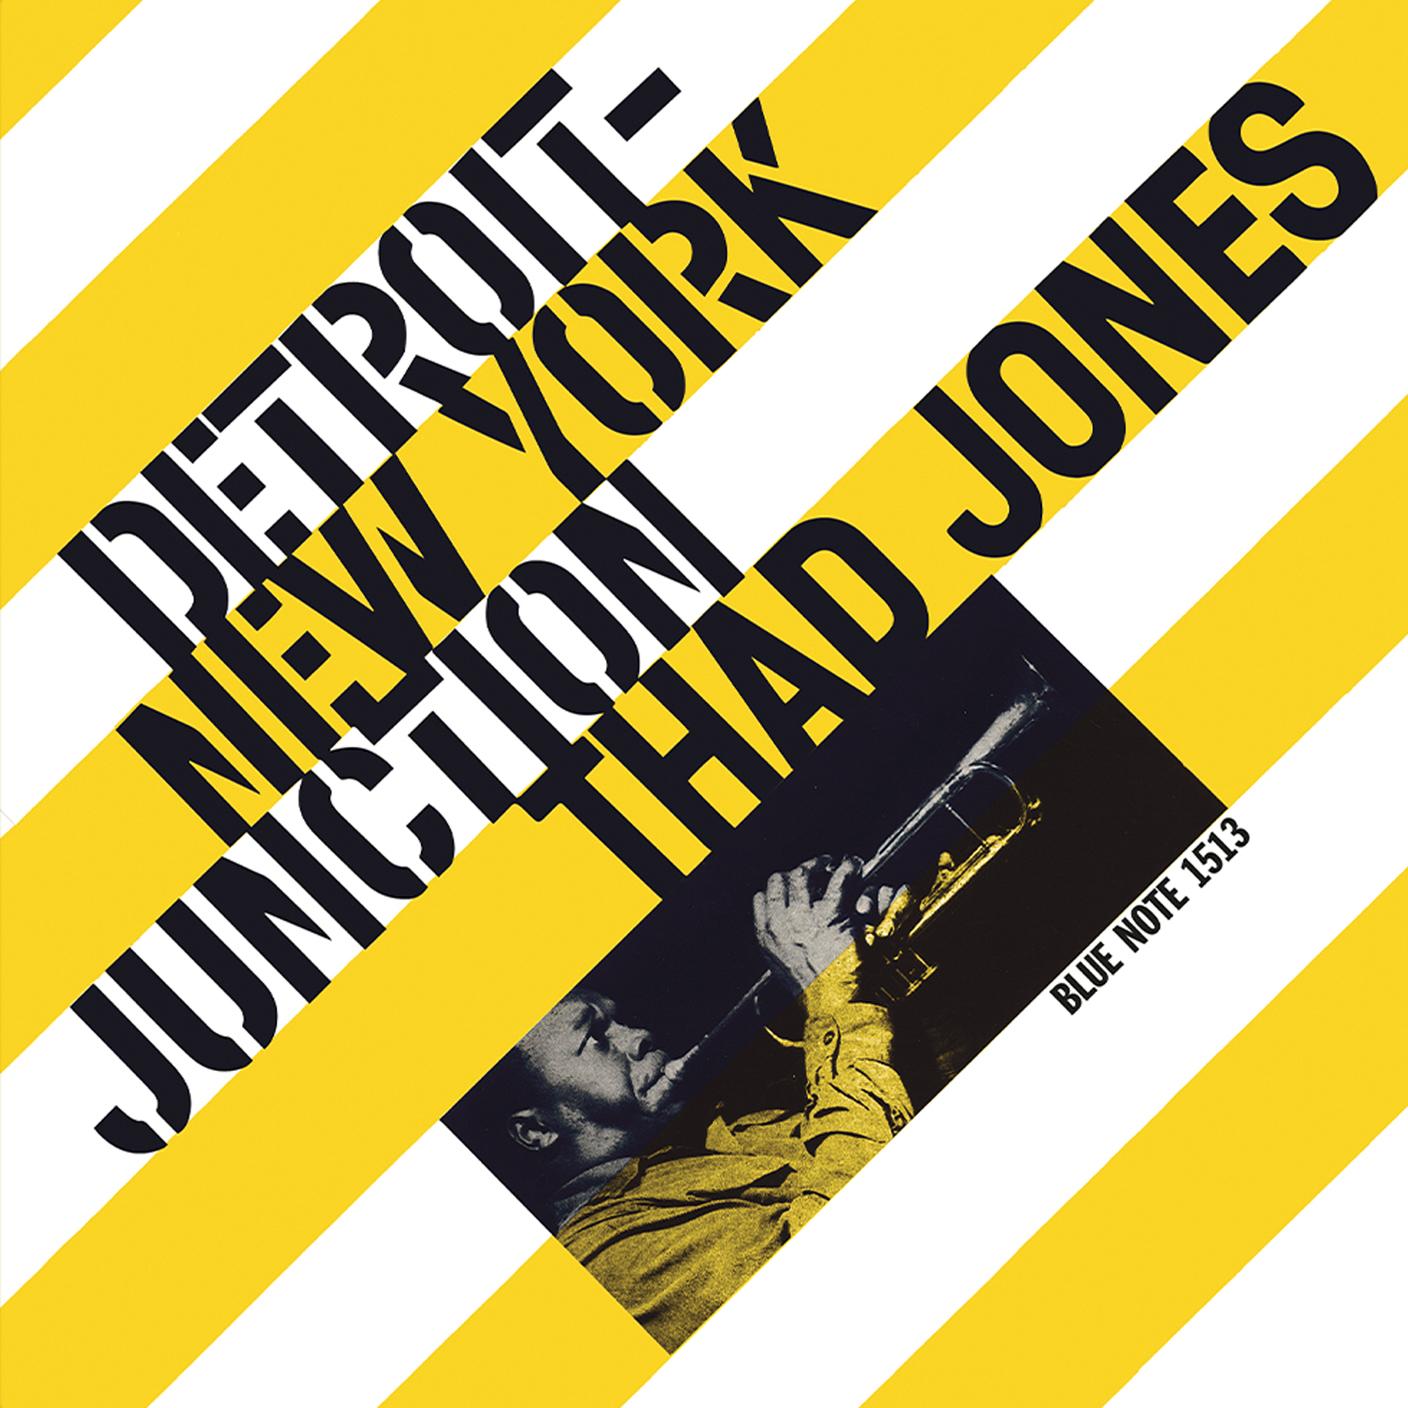 Detroit-New York Junction